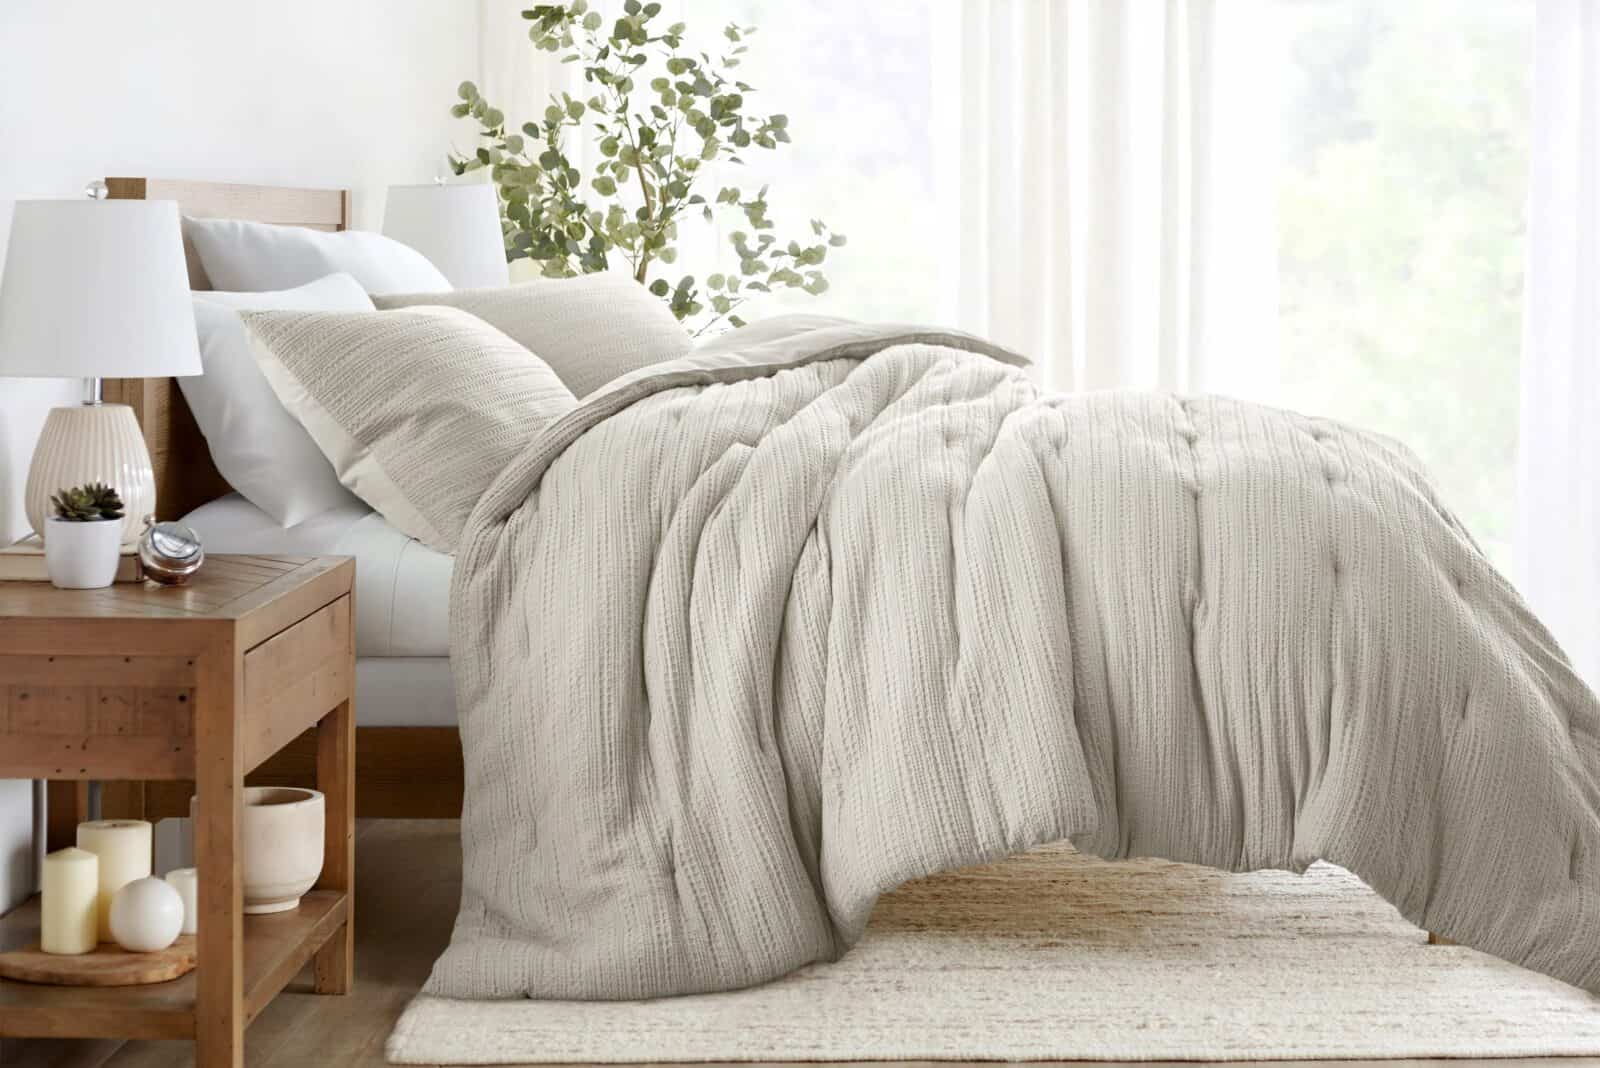 Janzaa Queen Comforter Set Taupe Comforter,3 PCS Bedding Sets Floral  Comforter S